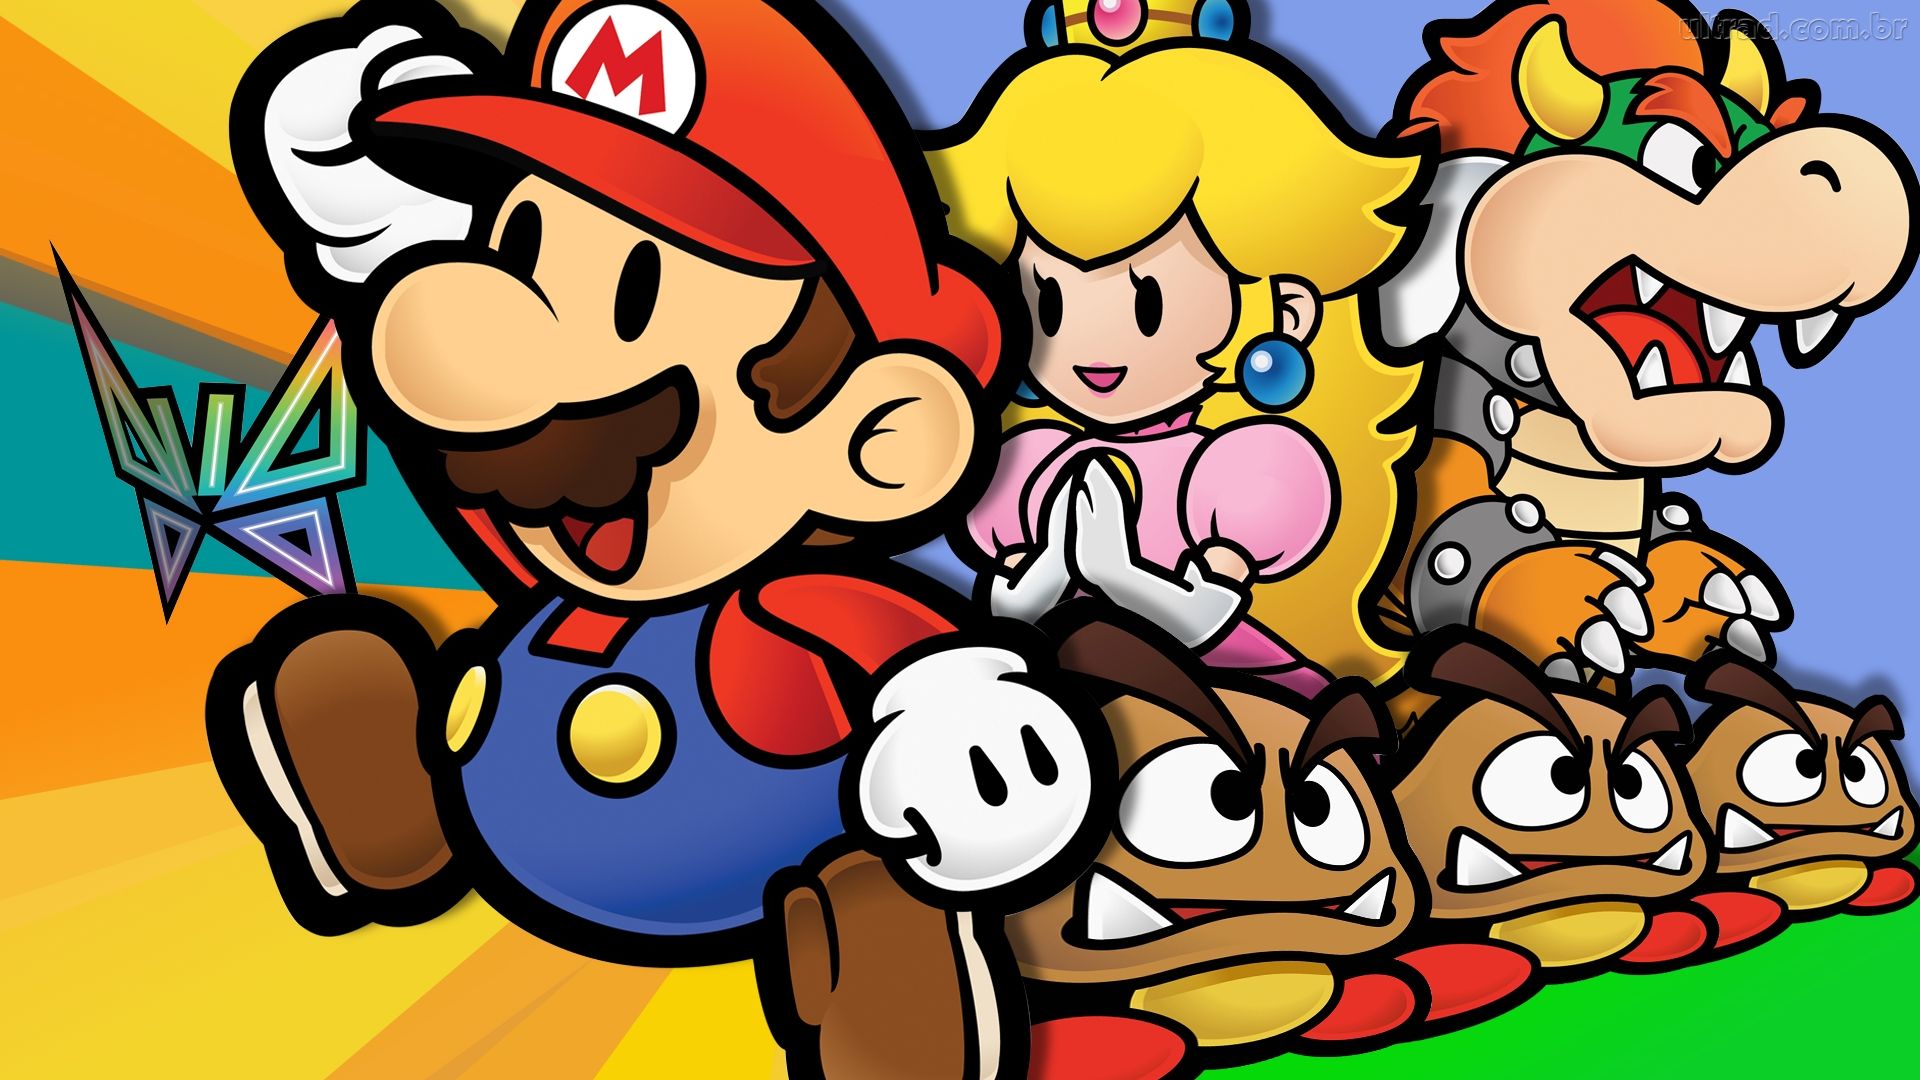 Descarga gratuita de fondo de pantalla para móvil de Mario, Videojuego, Goomba, Princesa Peach, Bowser, Paper Mario Rpg.